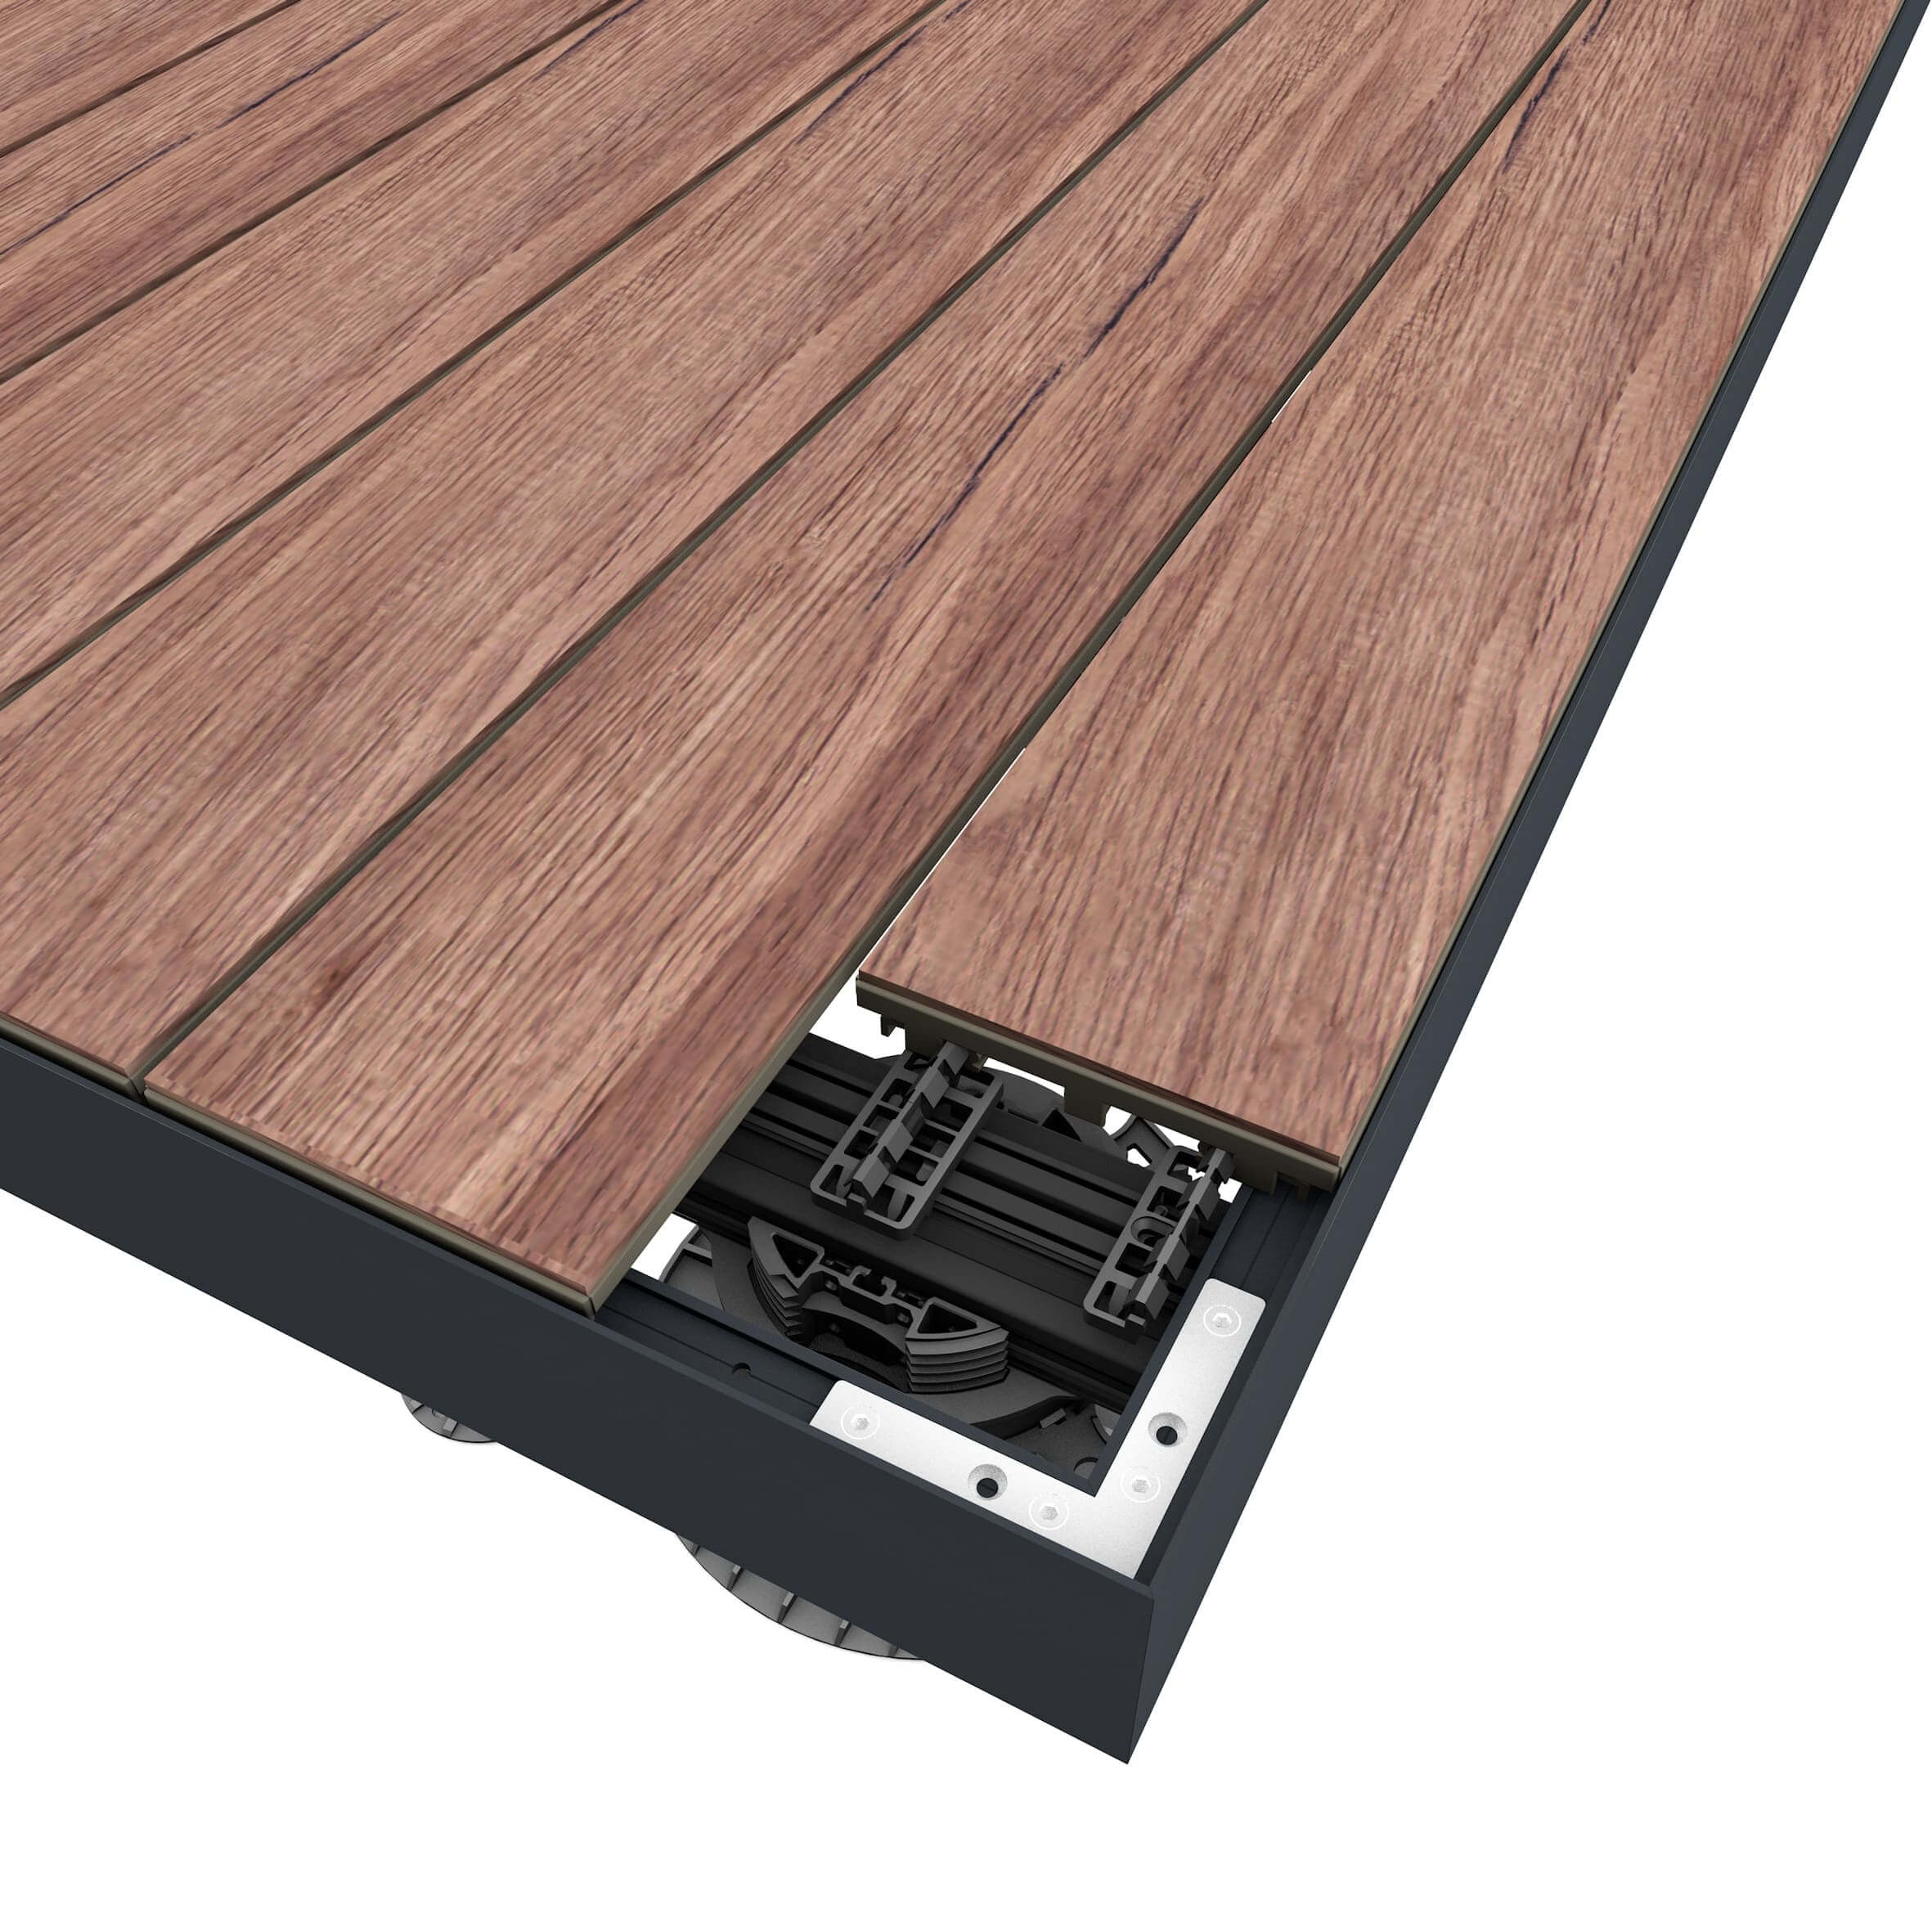 Bandeau de finition pour terrasse en bois, grés-cérame ou composite.